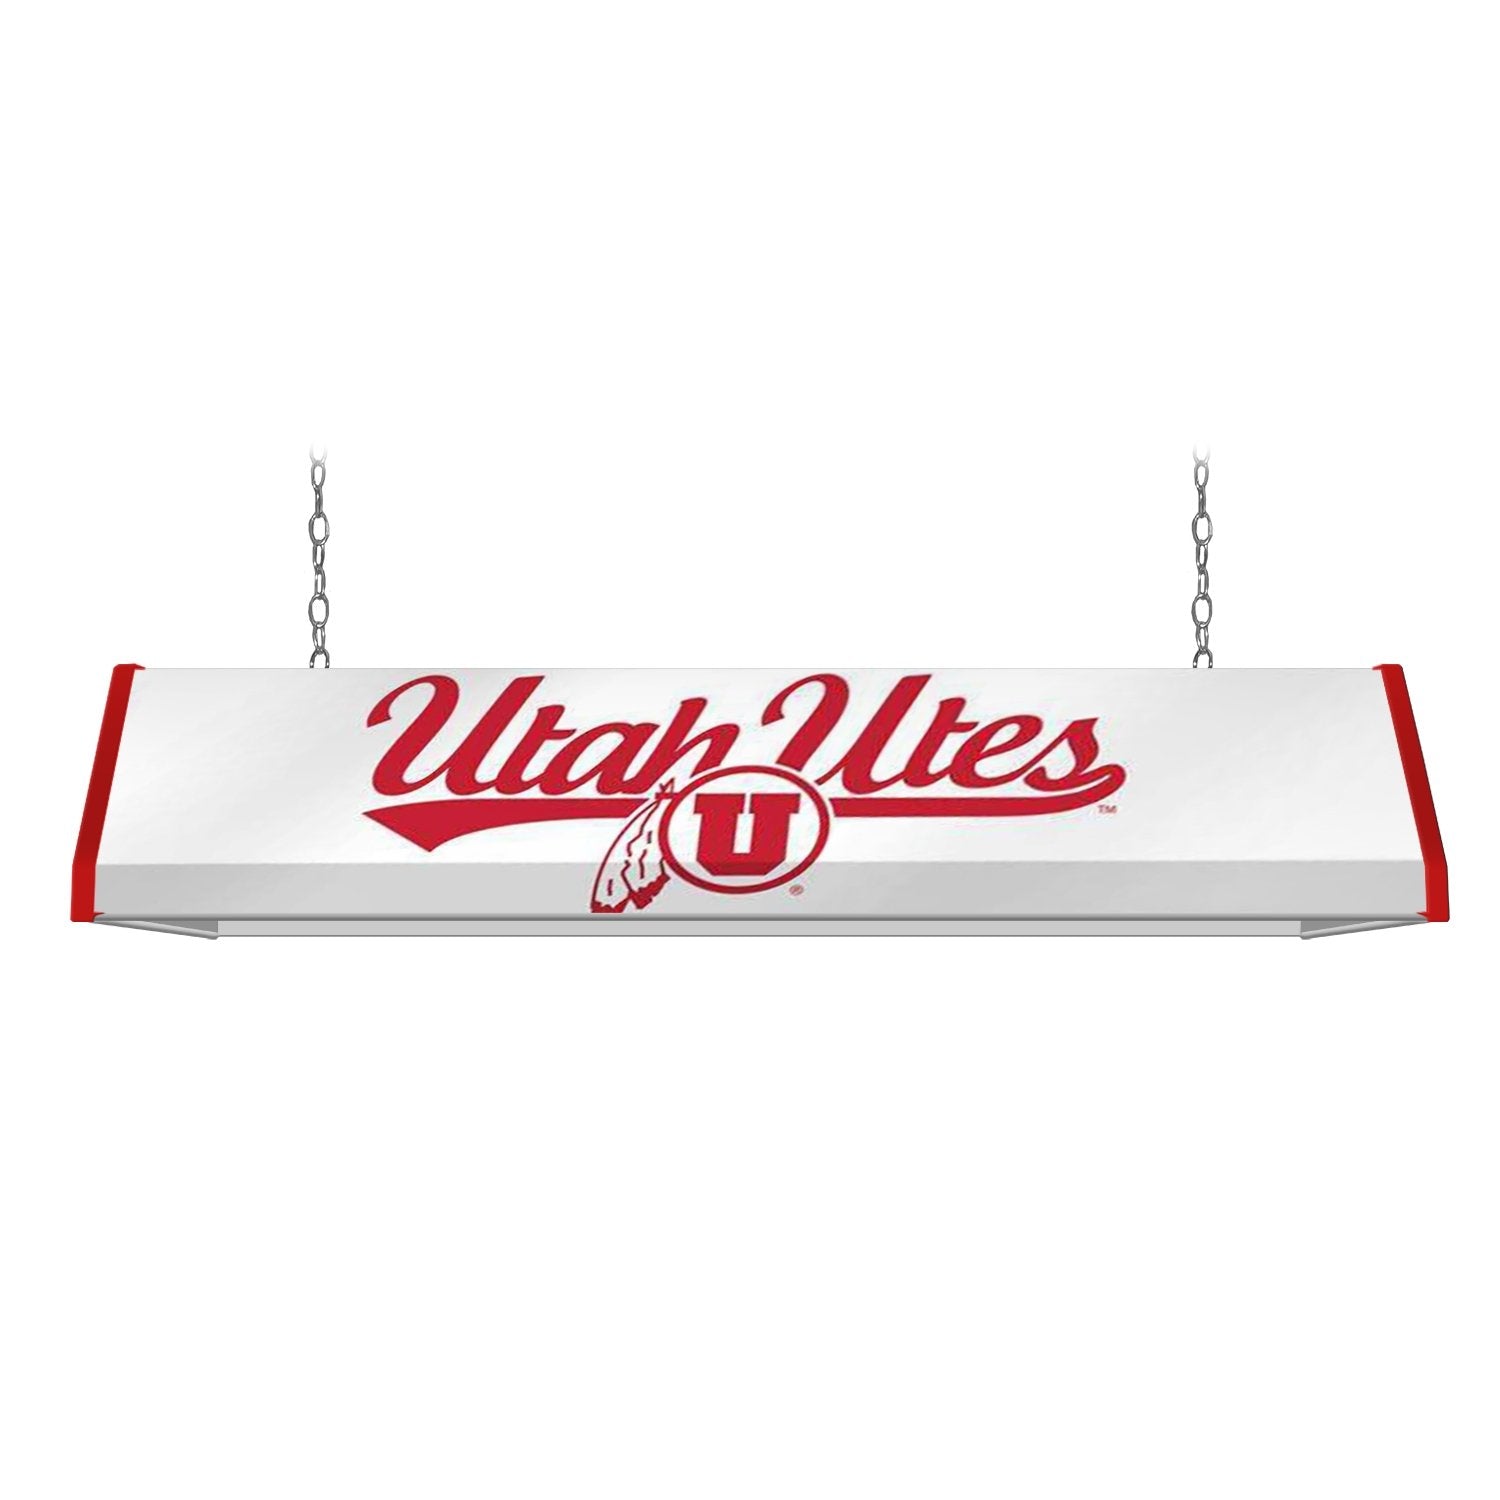 Utah Utes: Standard Pool Table Light - The Fan-Brand